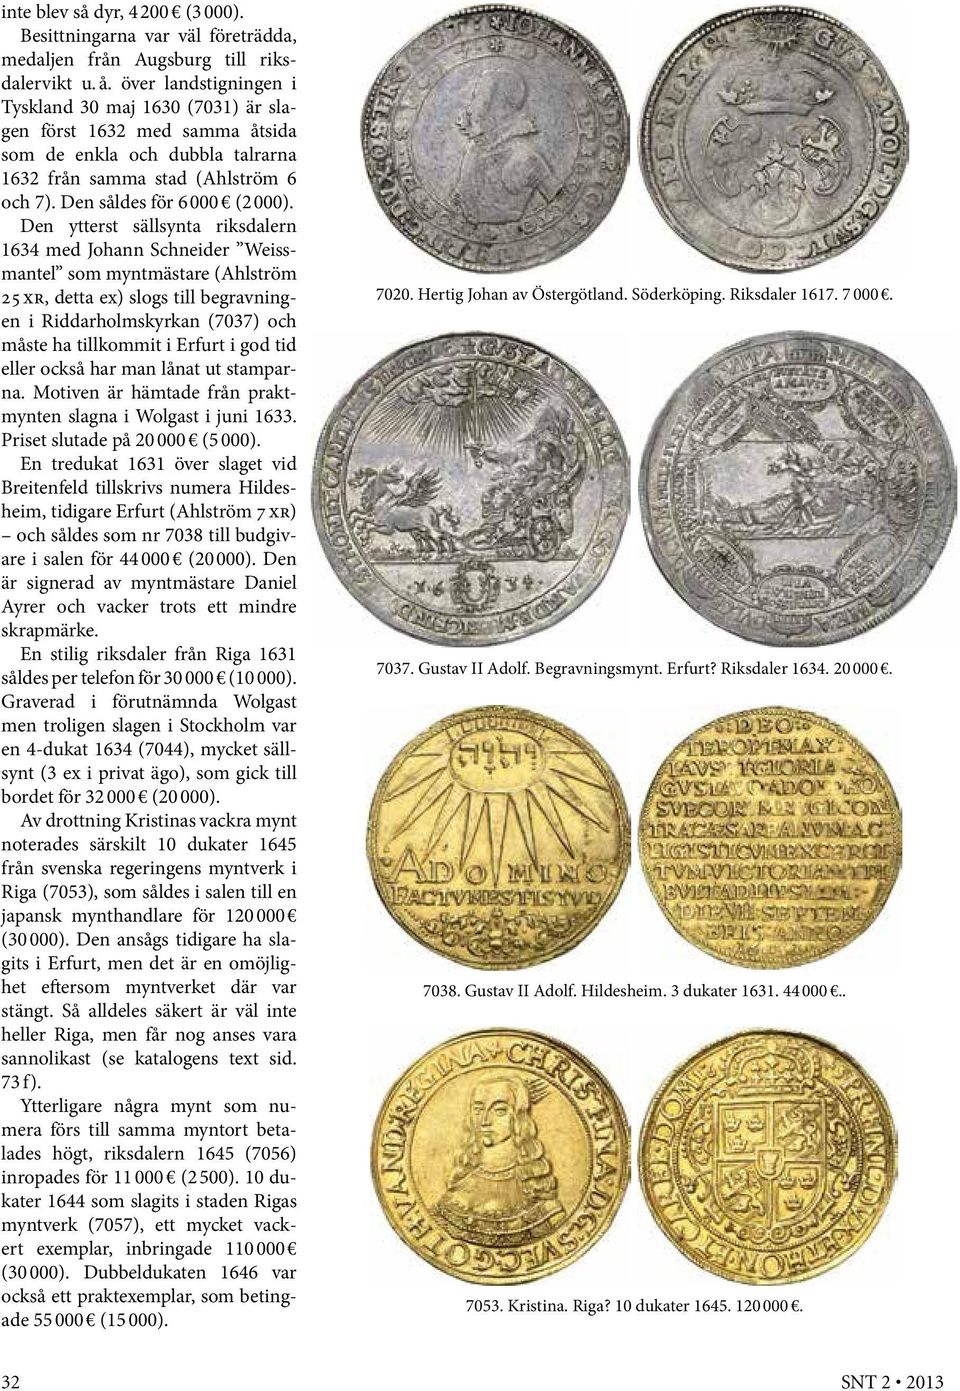 Den ytterst sällsynta riksdalern 1634 med Johann Schneider Weissmantel som myntmästare (Ahlström 25 xr, detta ex) slogs till begravningen i Riddarholmskyrkan (7037) och måste ha tillkommit i Erfurt i